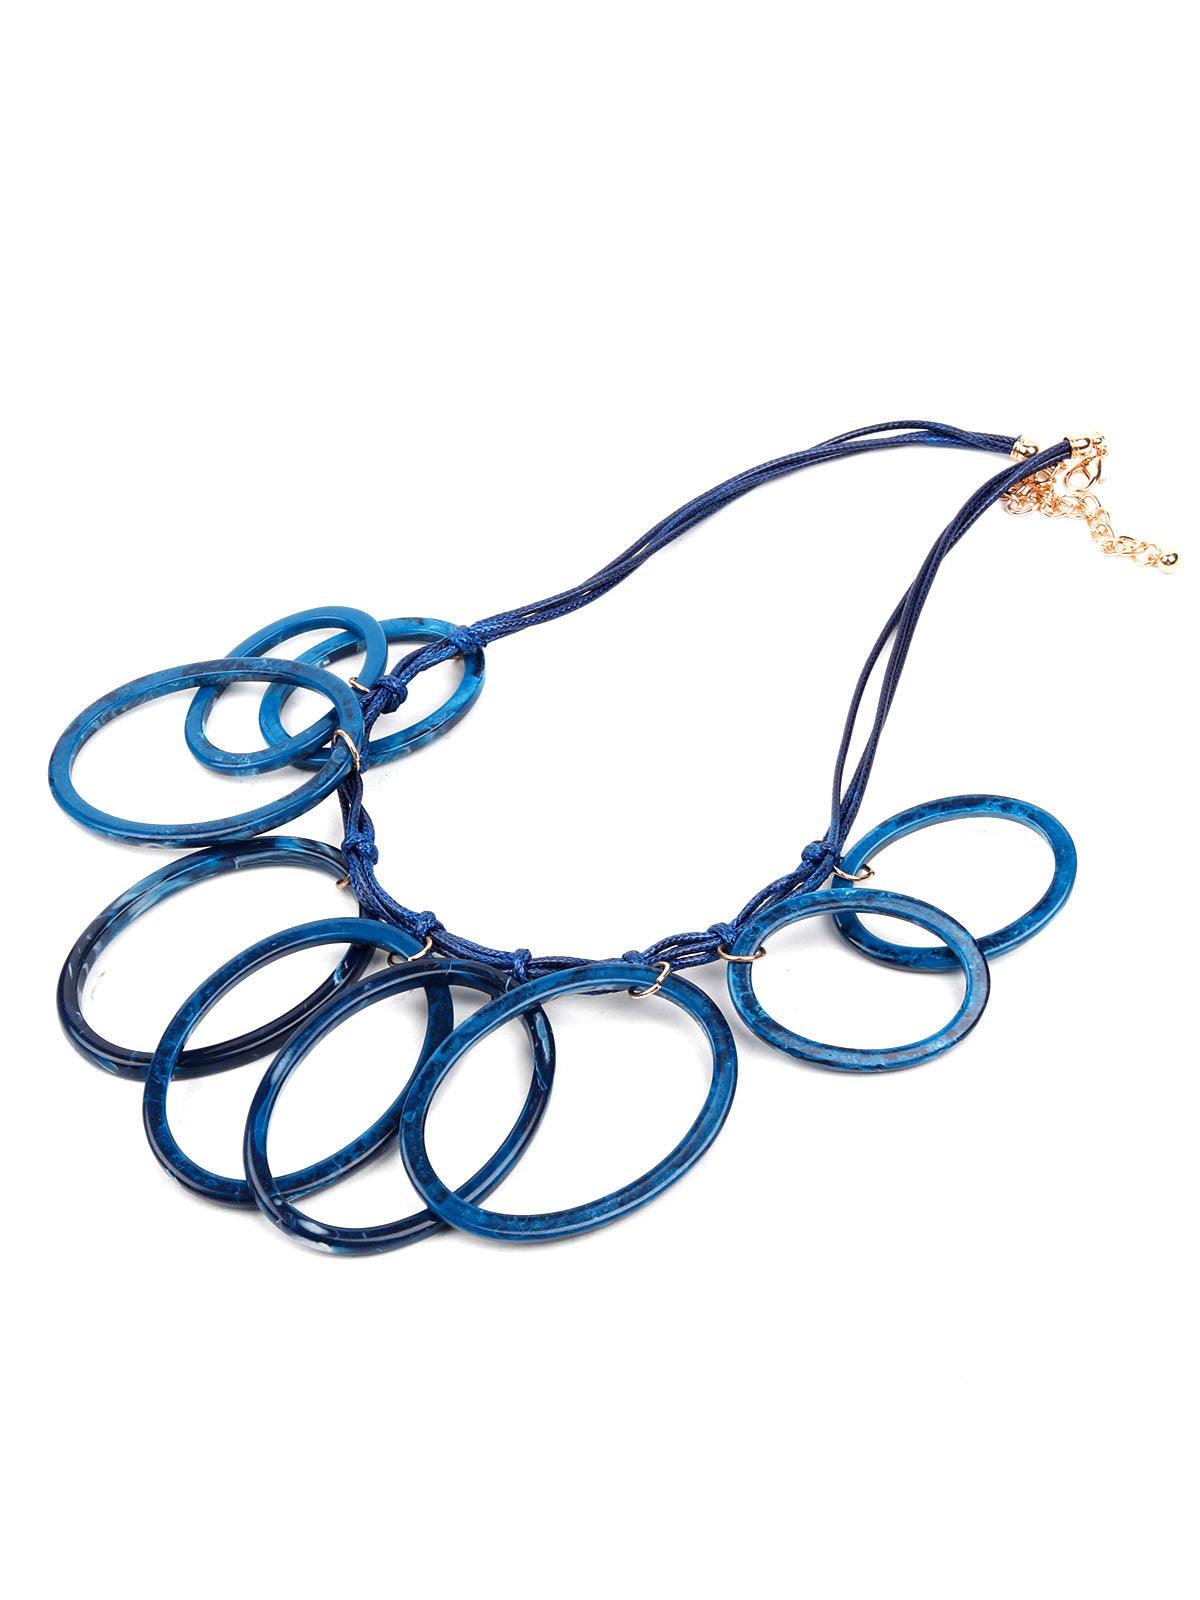 Vibrant blue loop statement necklace - Odette